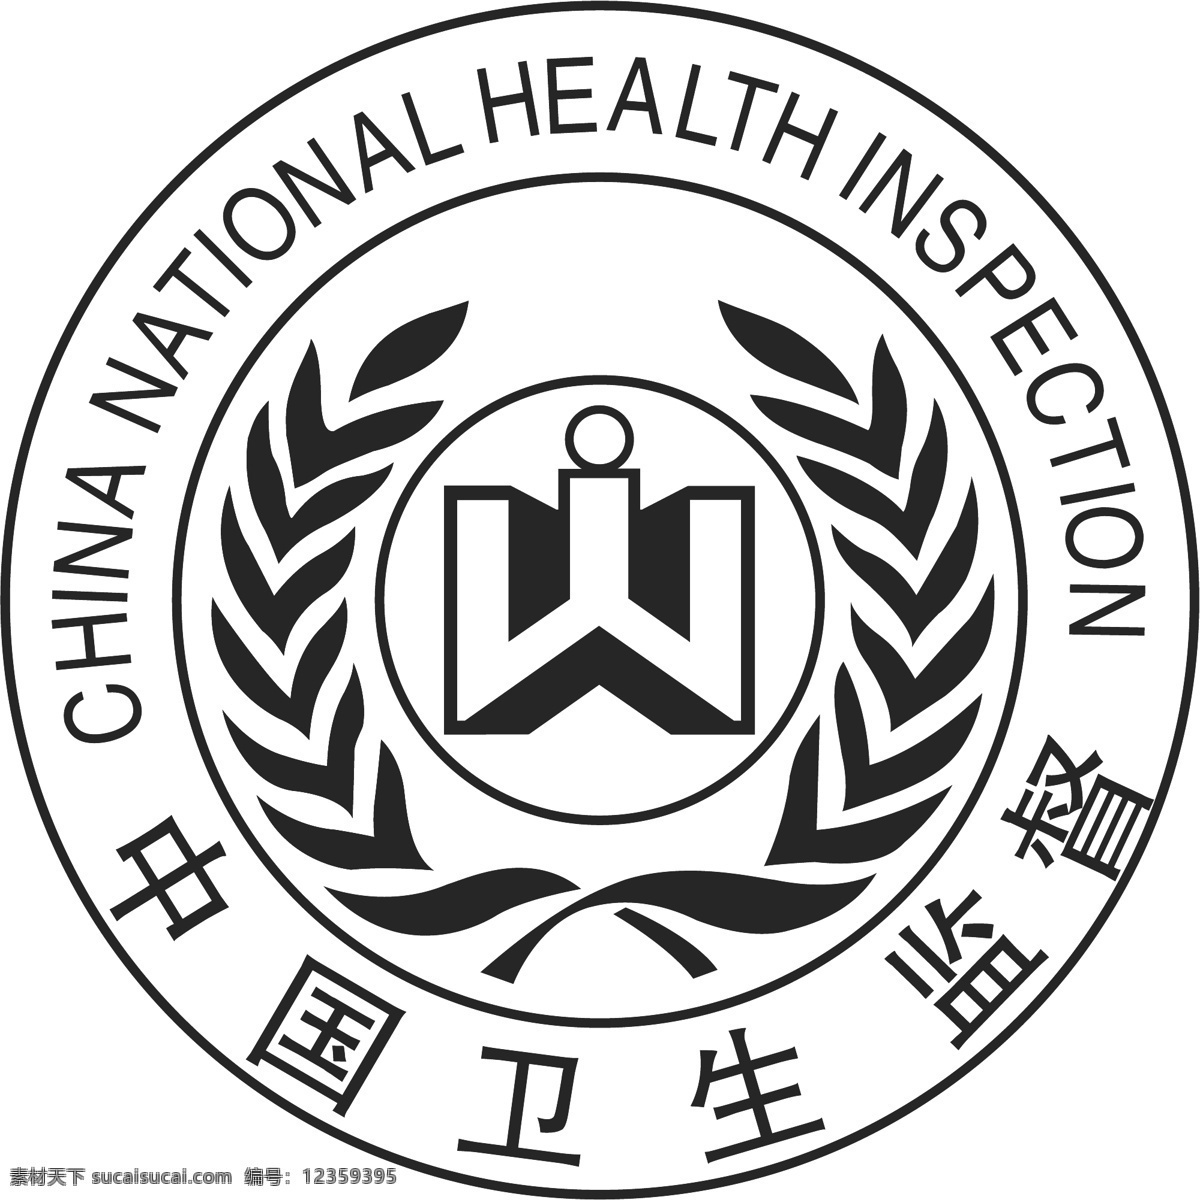 中国 卫生监督 行政管理 标志 管理 监督 政府 国家卫生监督 矢量图 其他矢量图